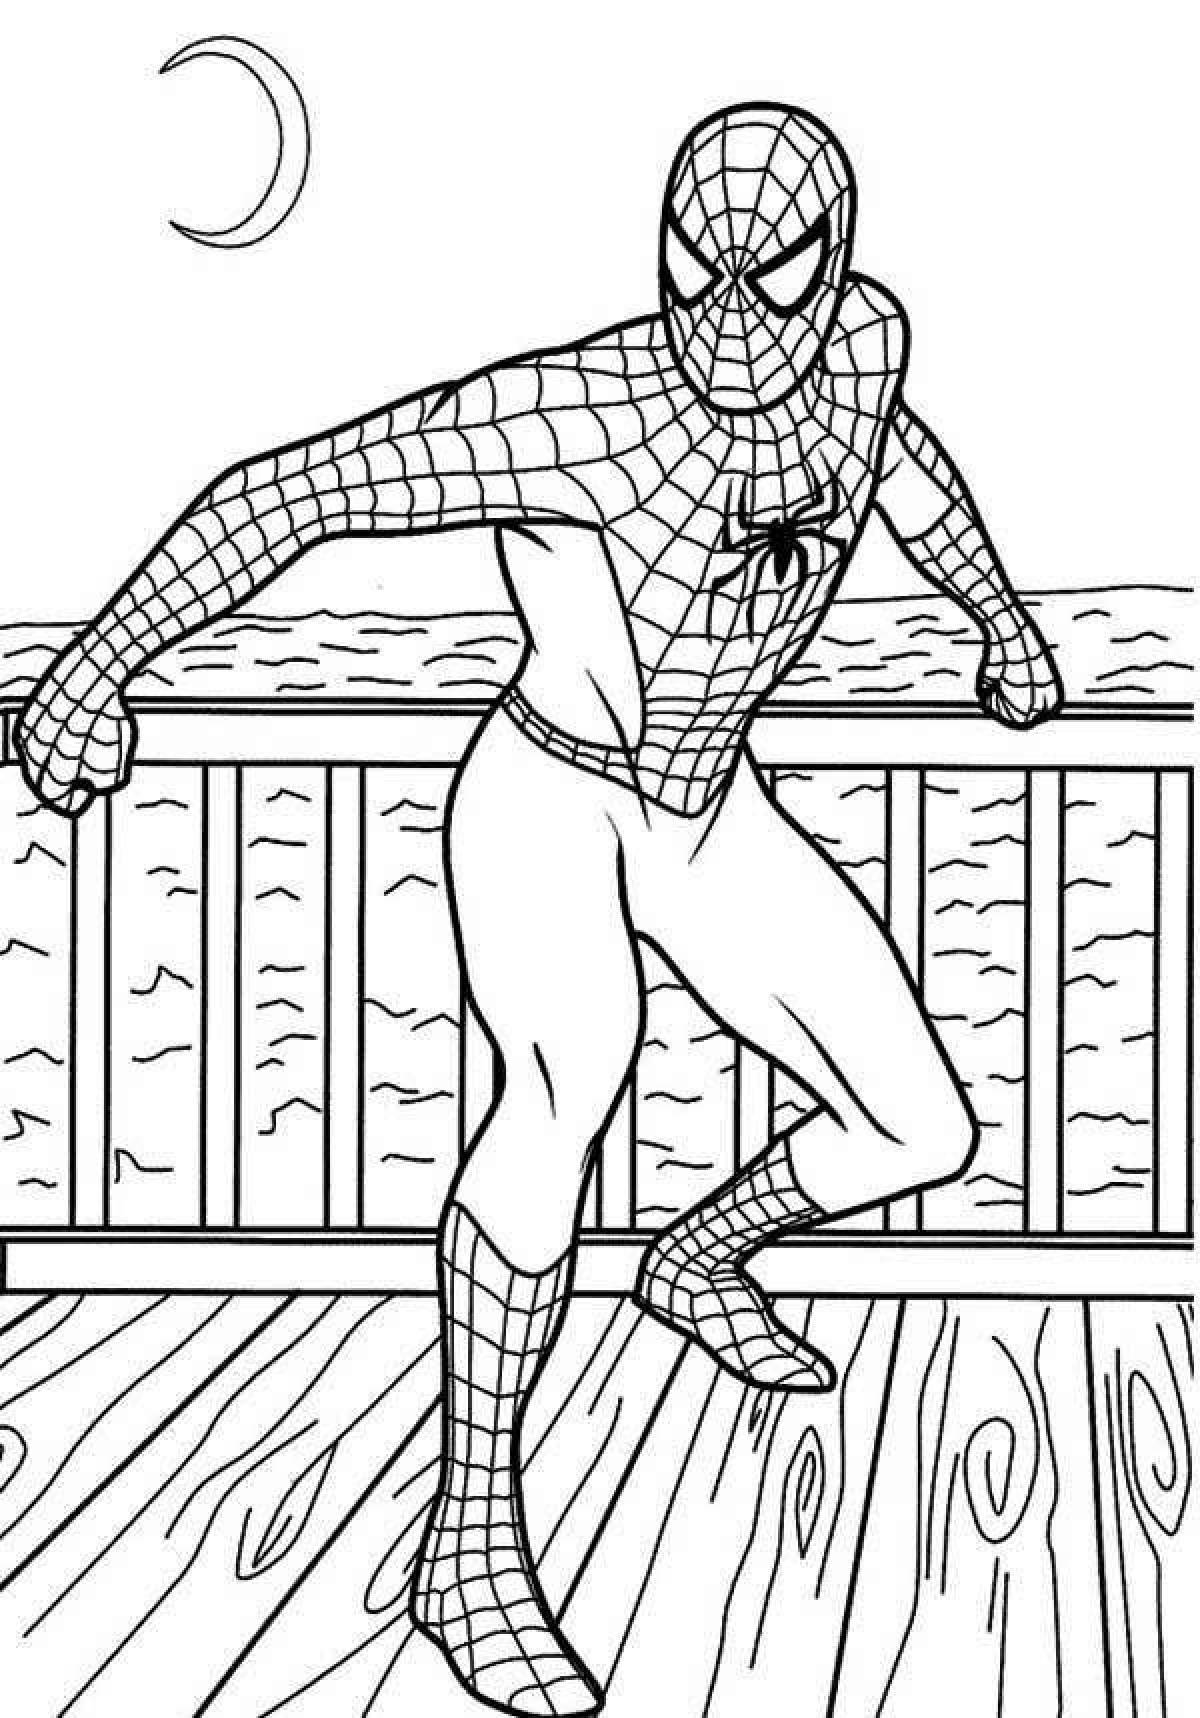 Exquisite spider-man coloring book